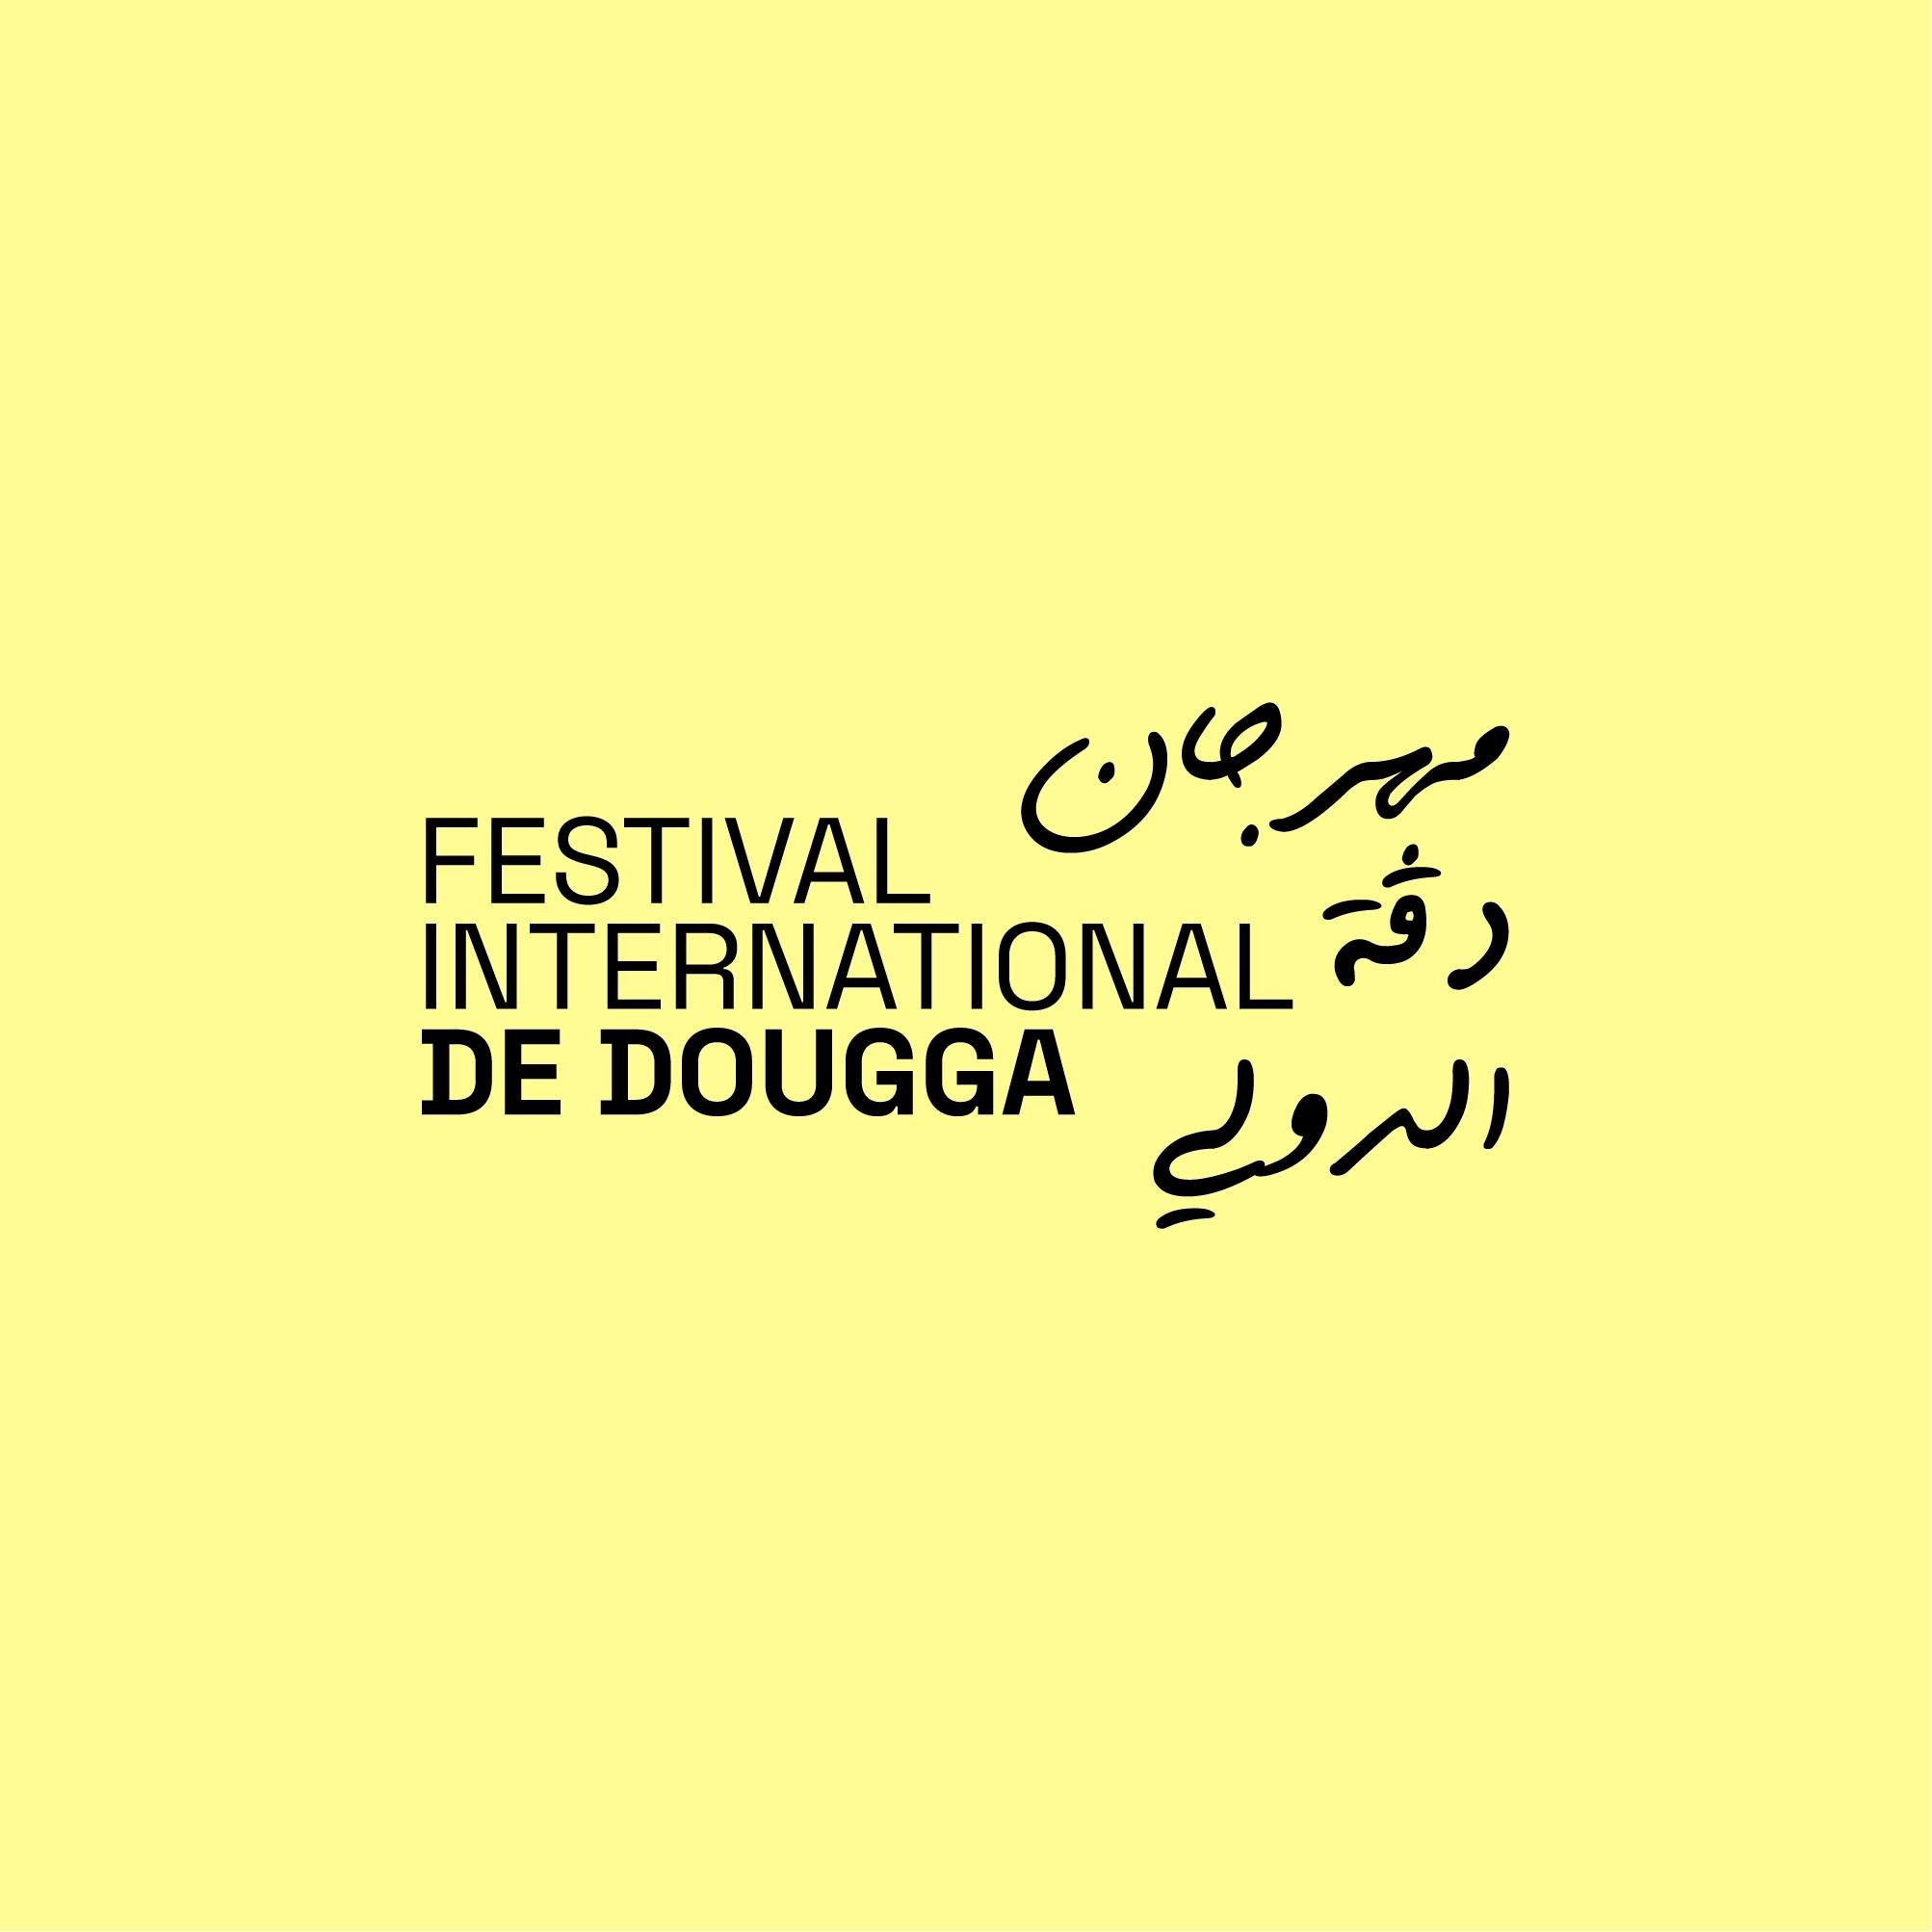 dougga festival